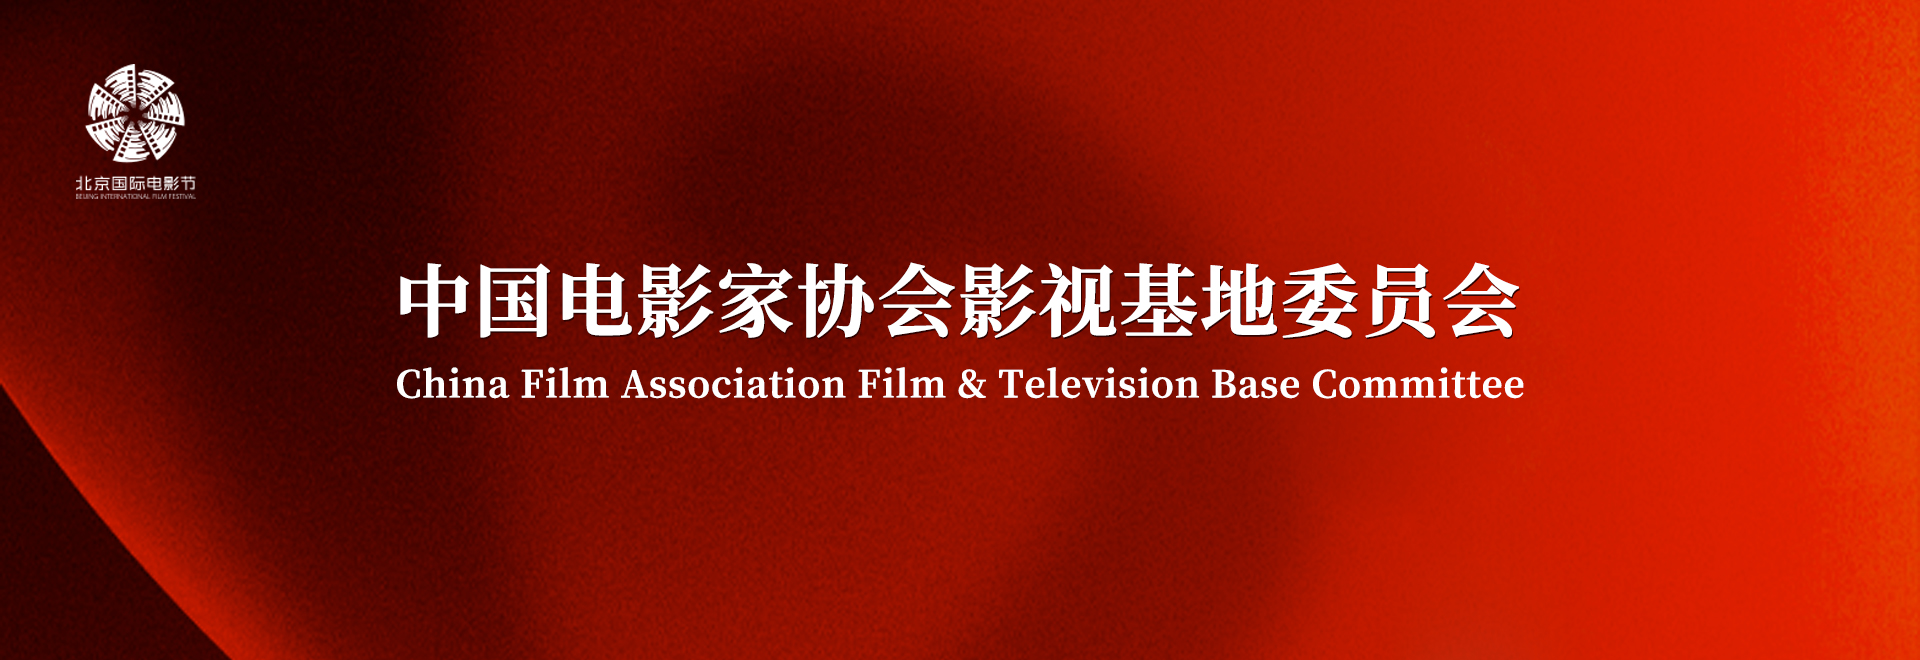 中国电影家协会.jpg